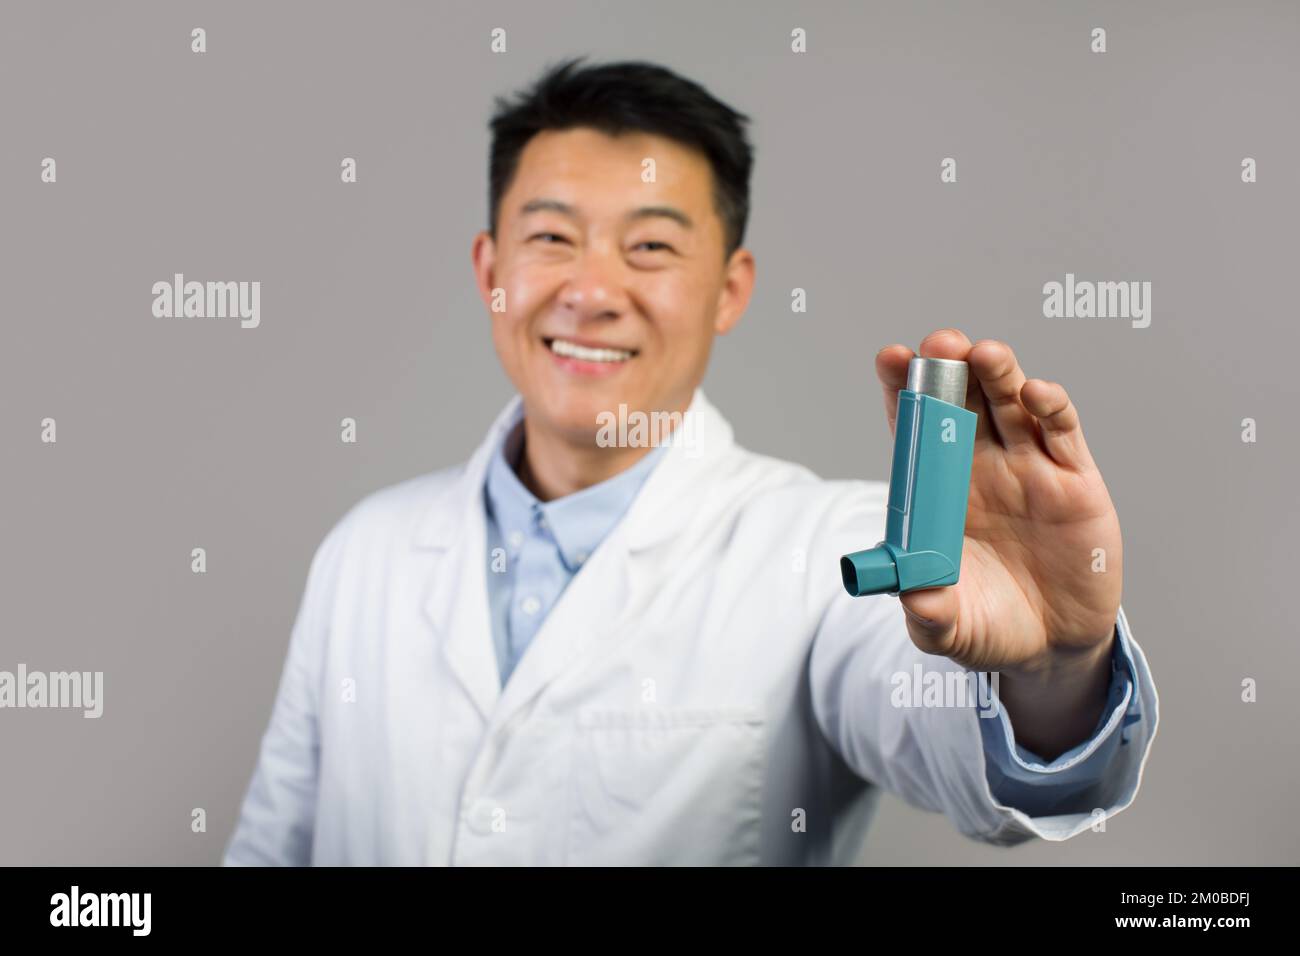 Thérapeute chinois mature souriant en manteau blanc montrant un inhalateur pour la respiration et l'attaque asthmatique Banque D'Images